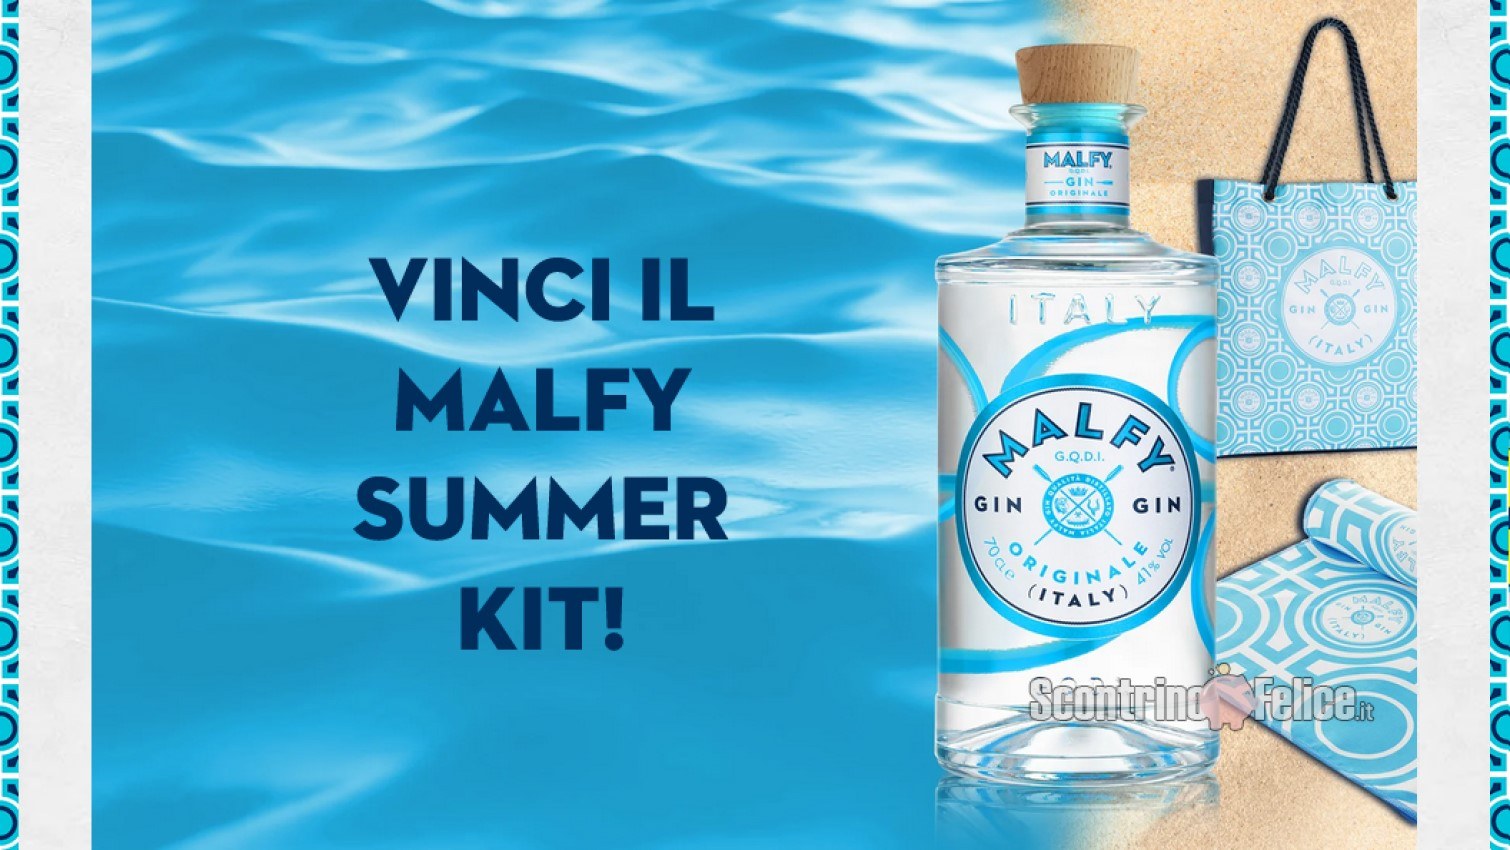 Vinci GRATIS 100 Summer Kit composti da 1 bottiglia di Malfy Gin, 1 tote bag e 1 telo mare!